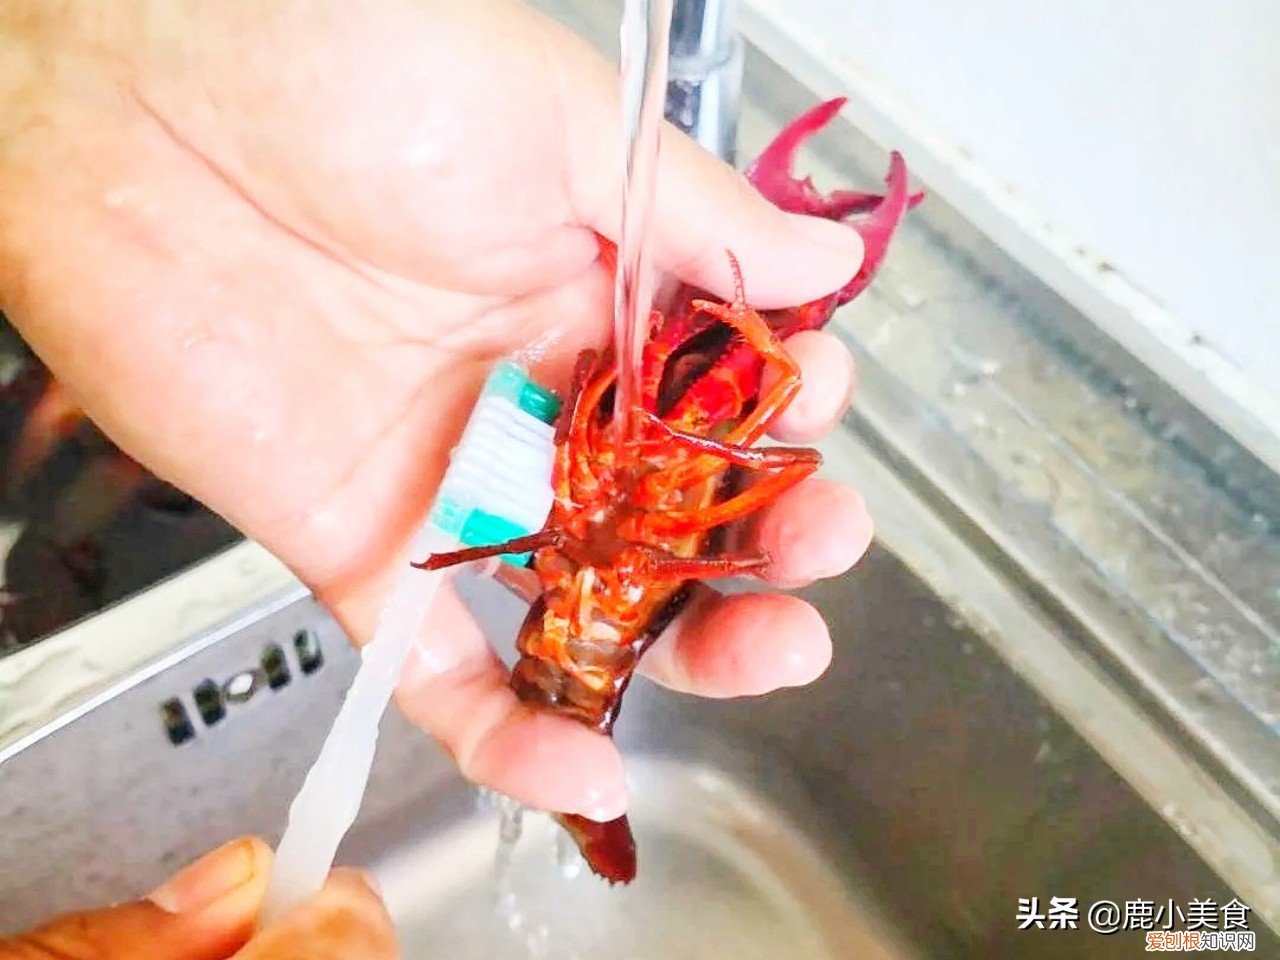 如何清洗和处理小龙虾?附：小龙虾清洗方法图!